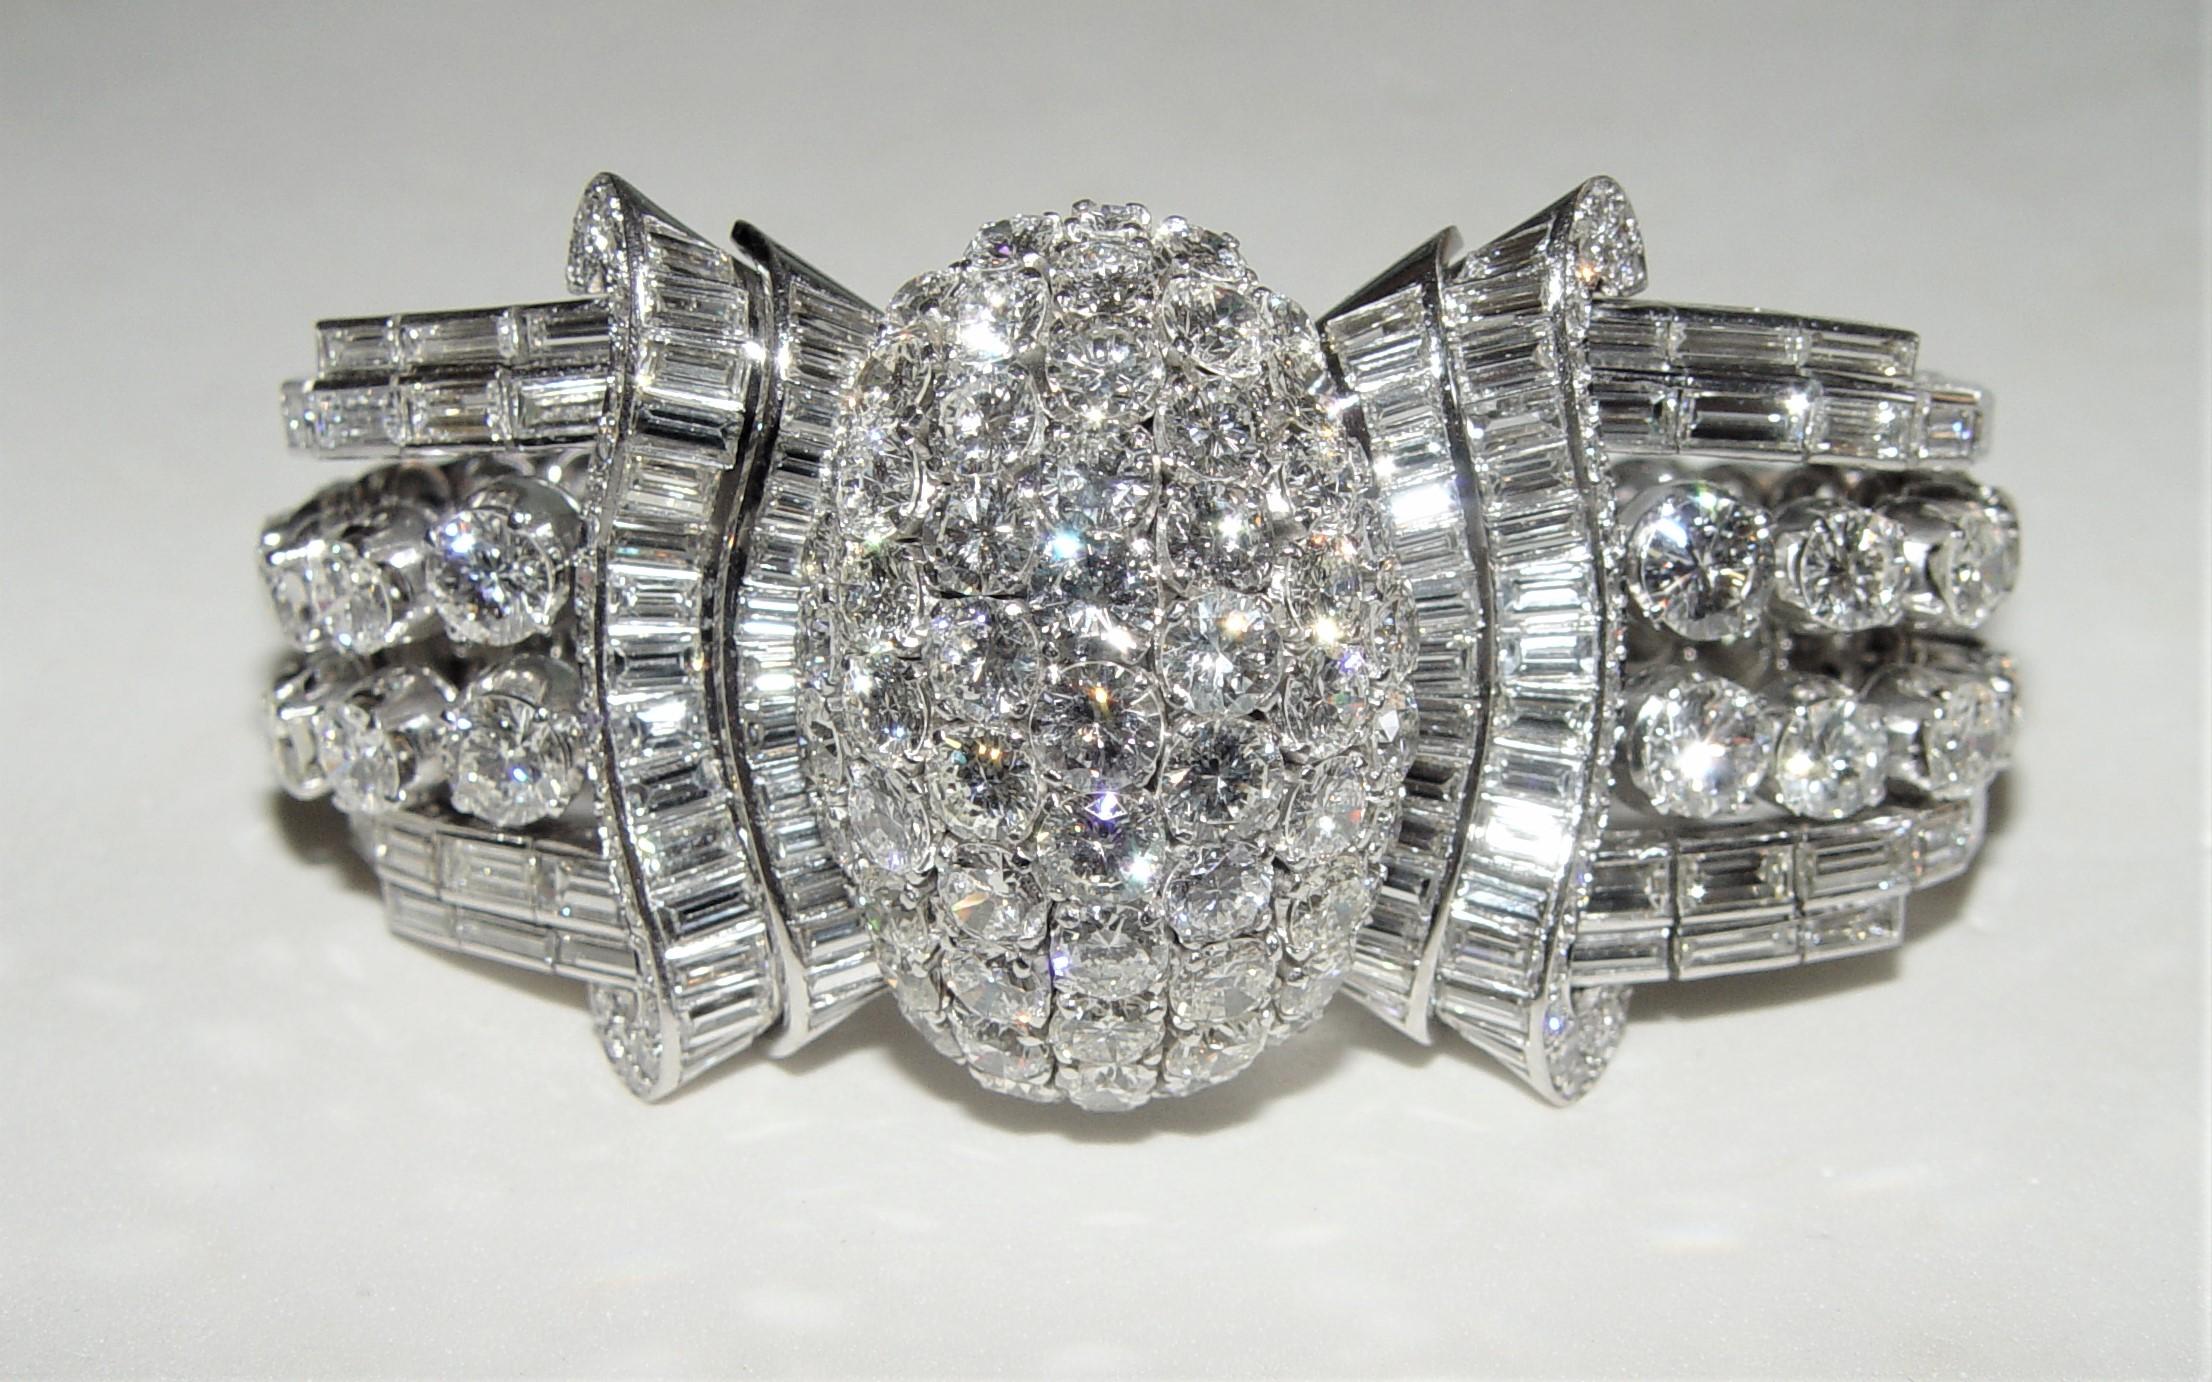 Wunderschönes Diamant-Tennisarmband aus den 1950er Jahren - ein echter Hingucker. Armband Alteuropäische, runde Diamanten im Brillant- und Baguetteschliff. Diamanten sind gut in Farbe und Klarheit abgestimmt - F-G-H in Farbe und VS in Klarheit